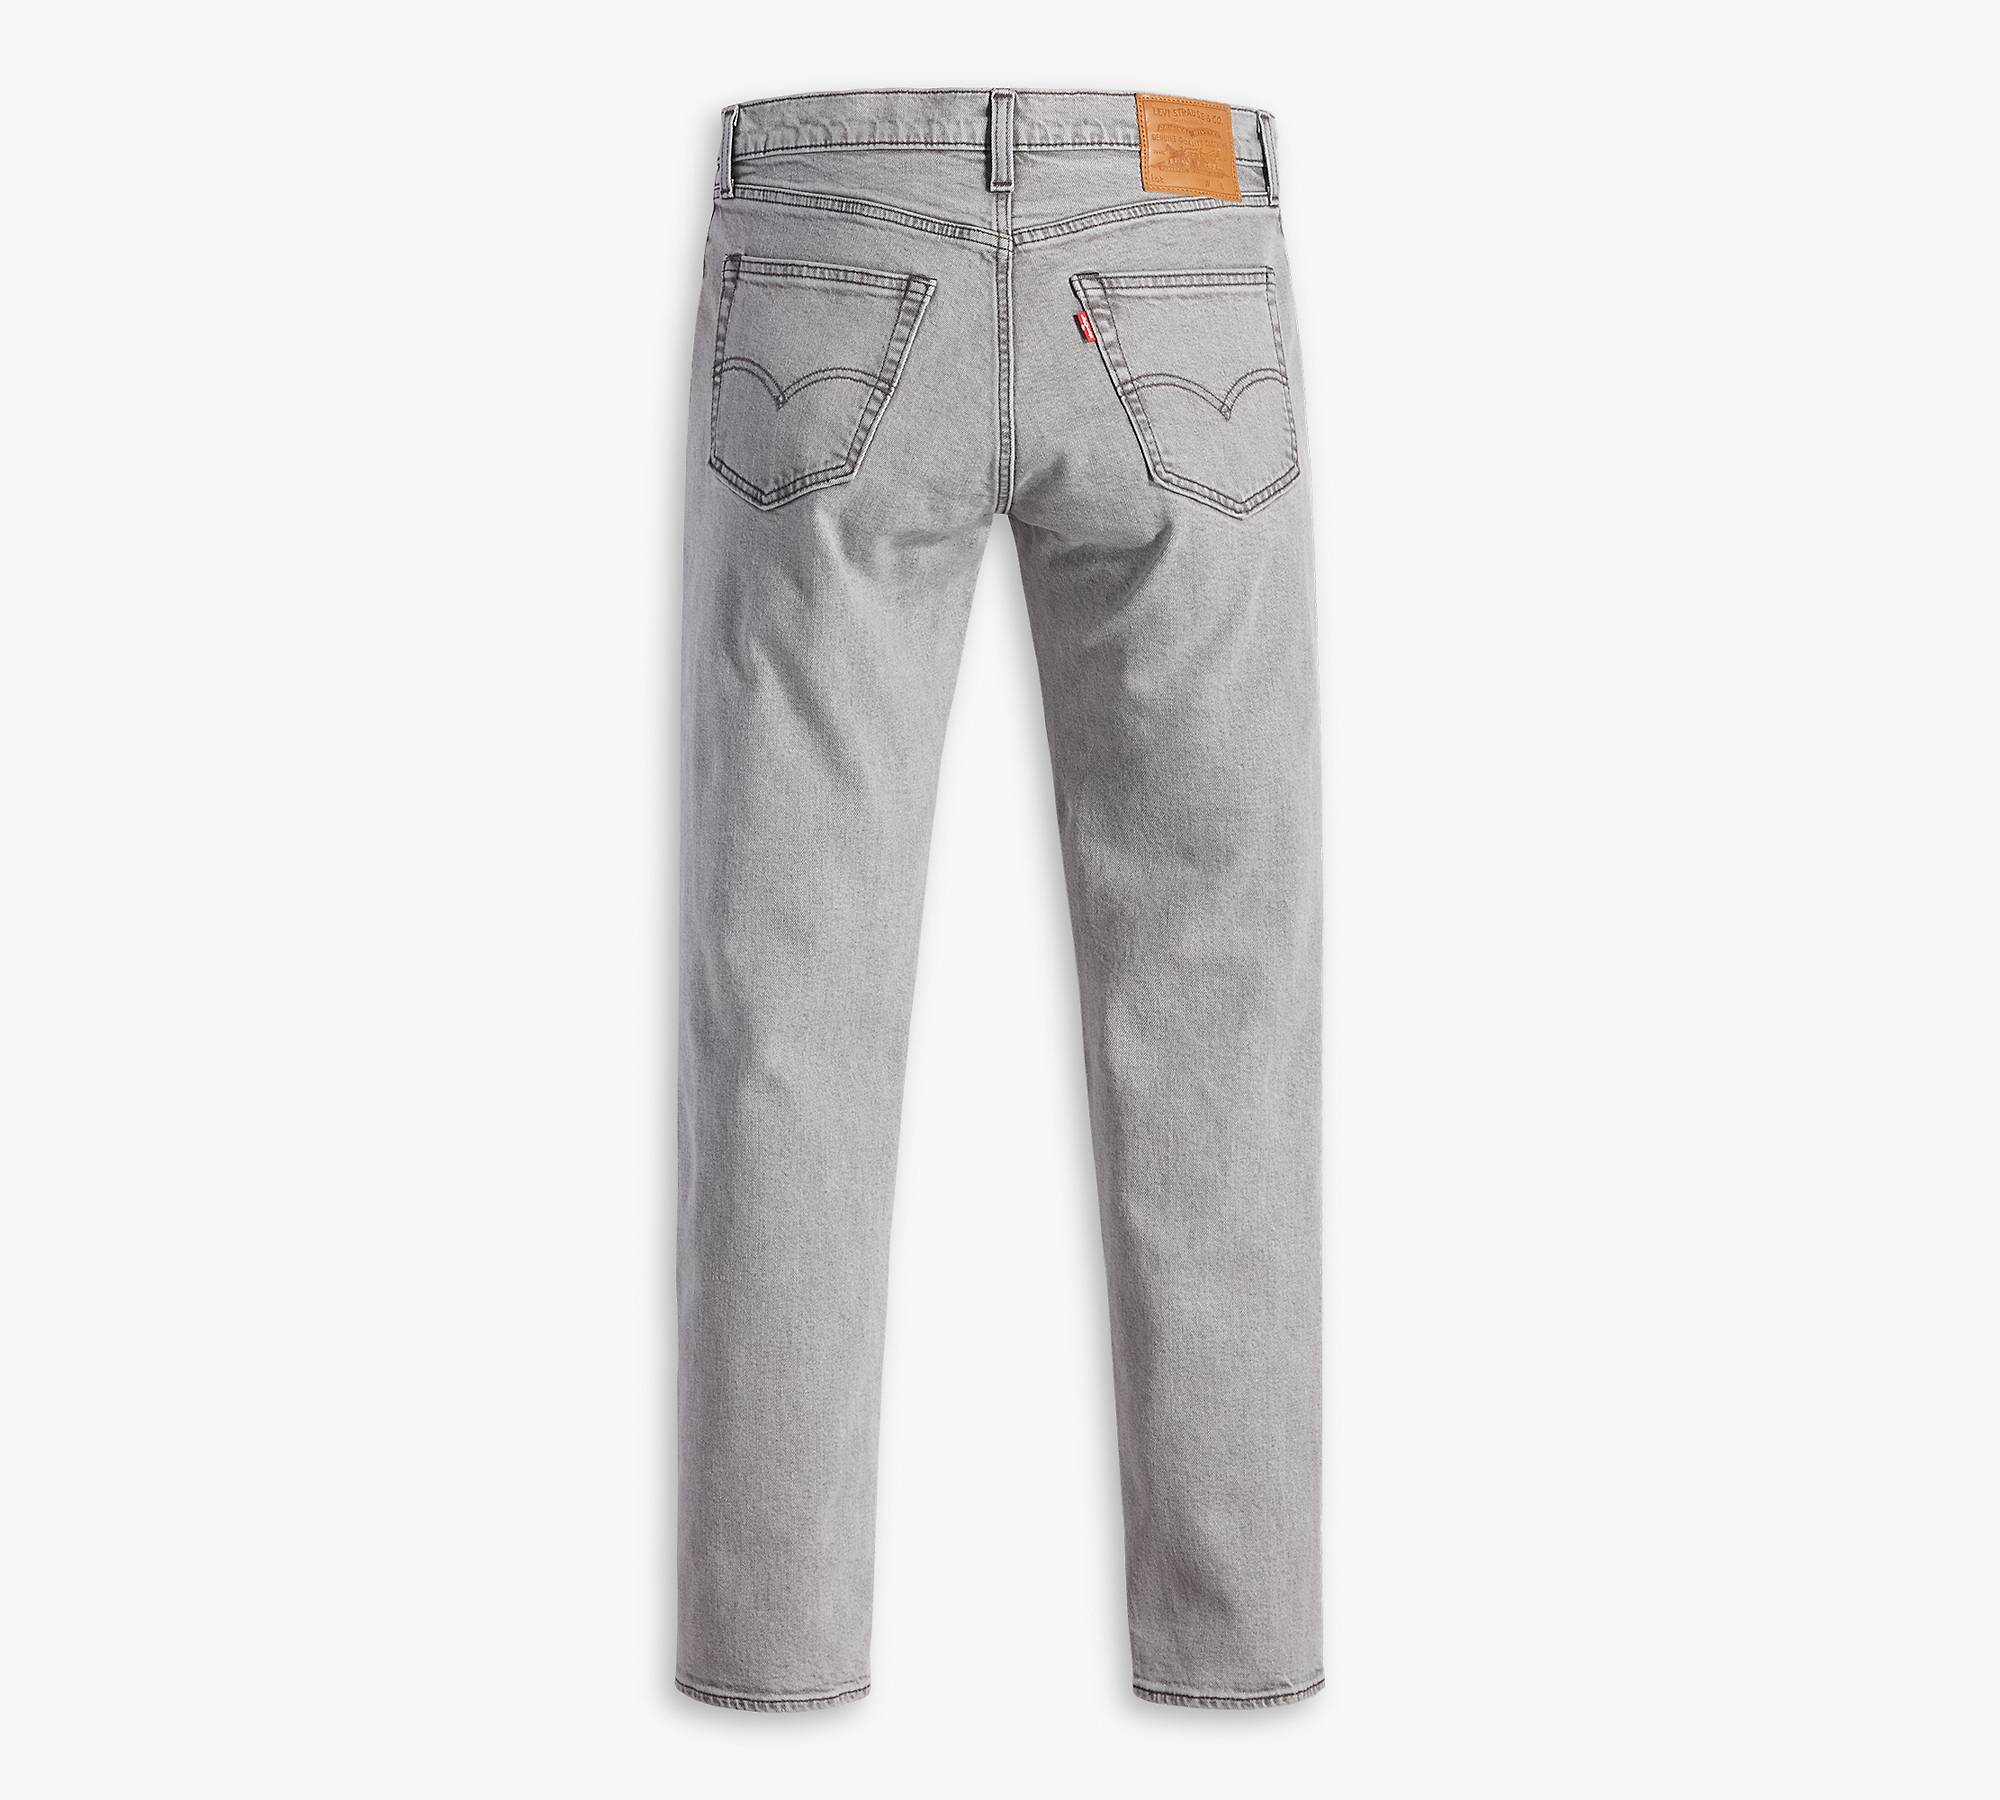 Vandret Integration Modstand 511™ Slim Fit Men's Jeans - Grey | Levi's® US